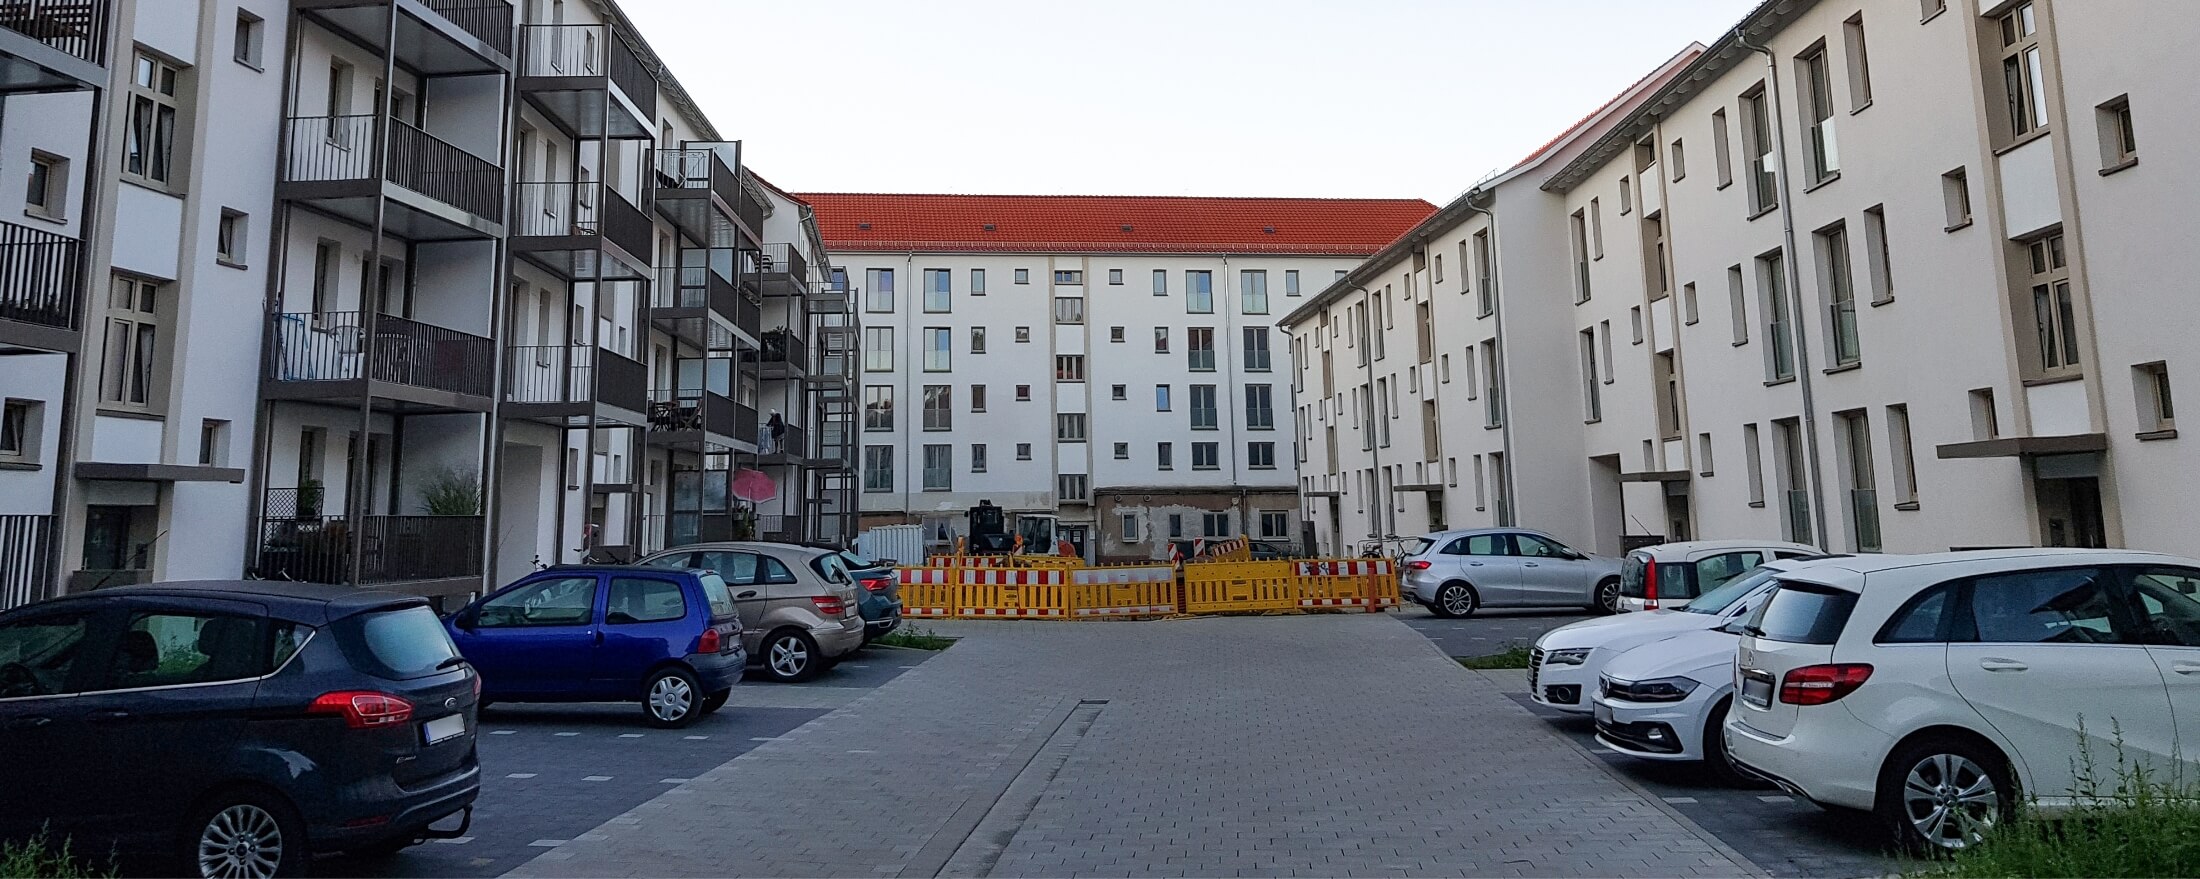 Umbau und energetische Sanierung des Hohe Tor Quartier. Hofansicht.